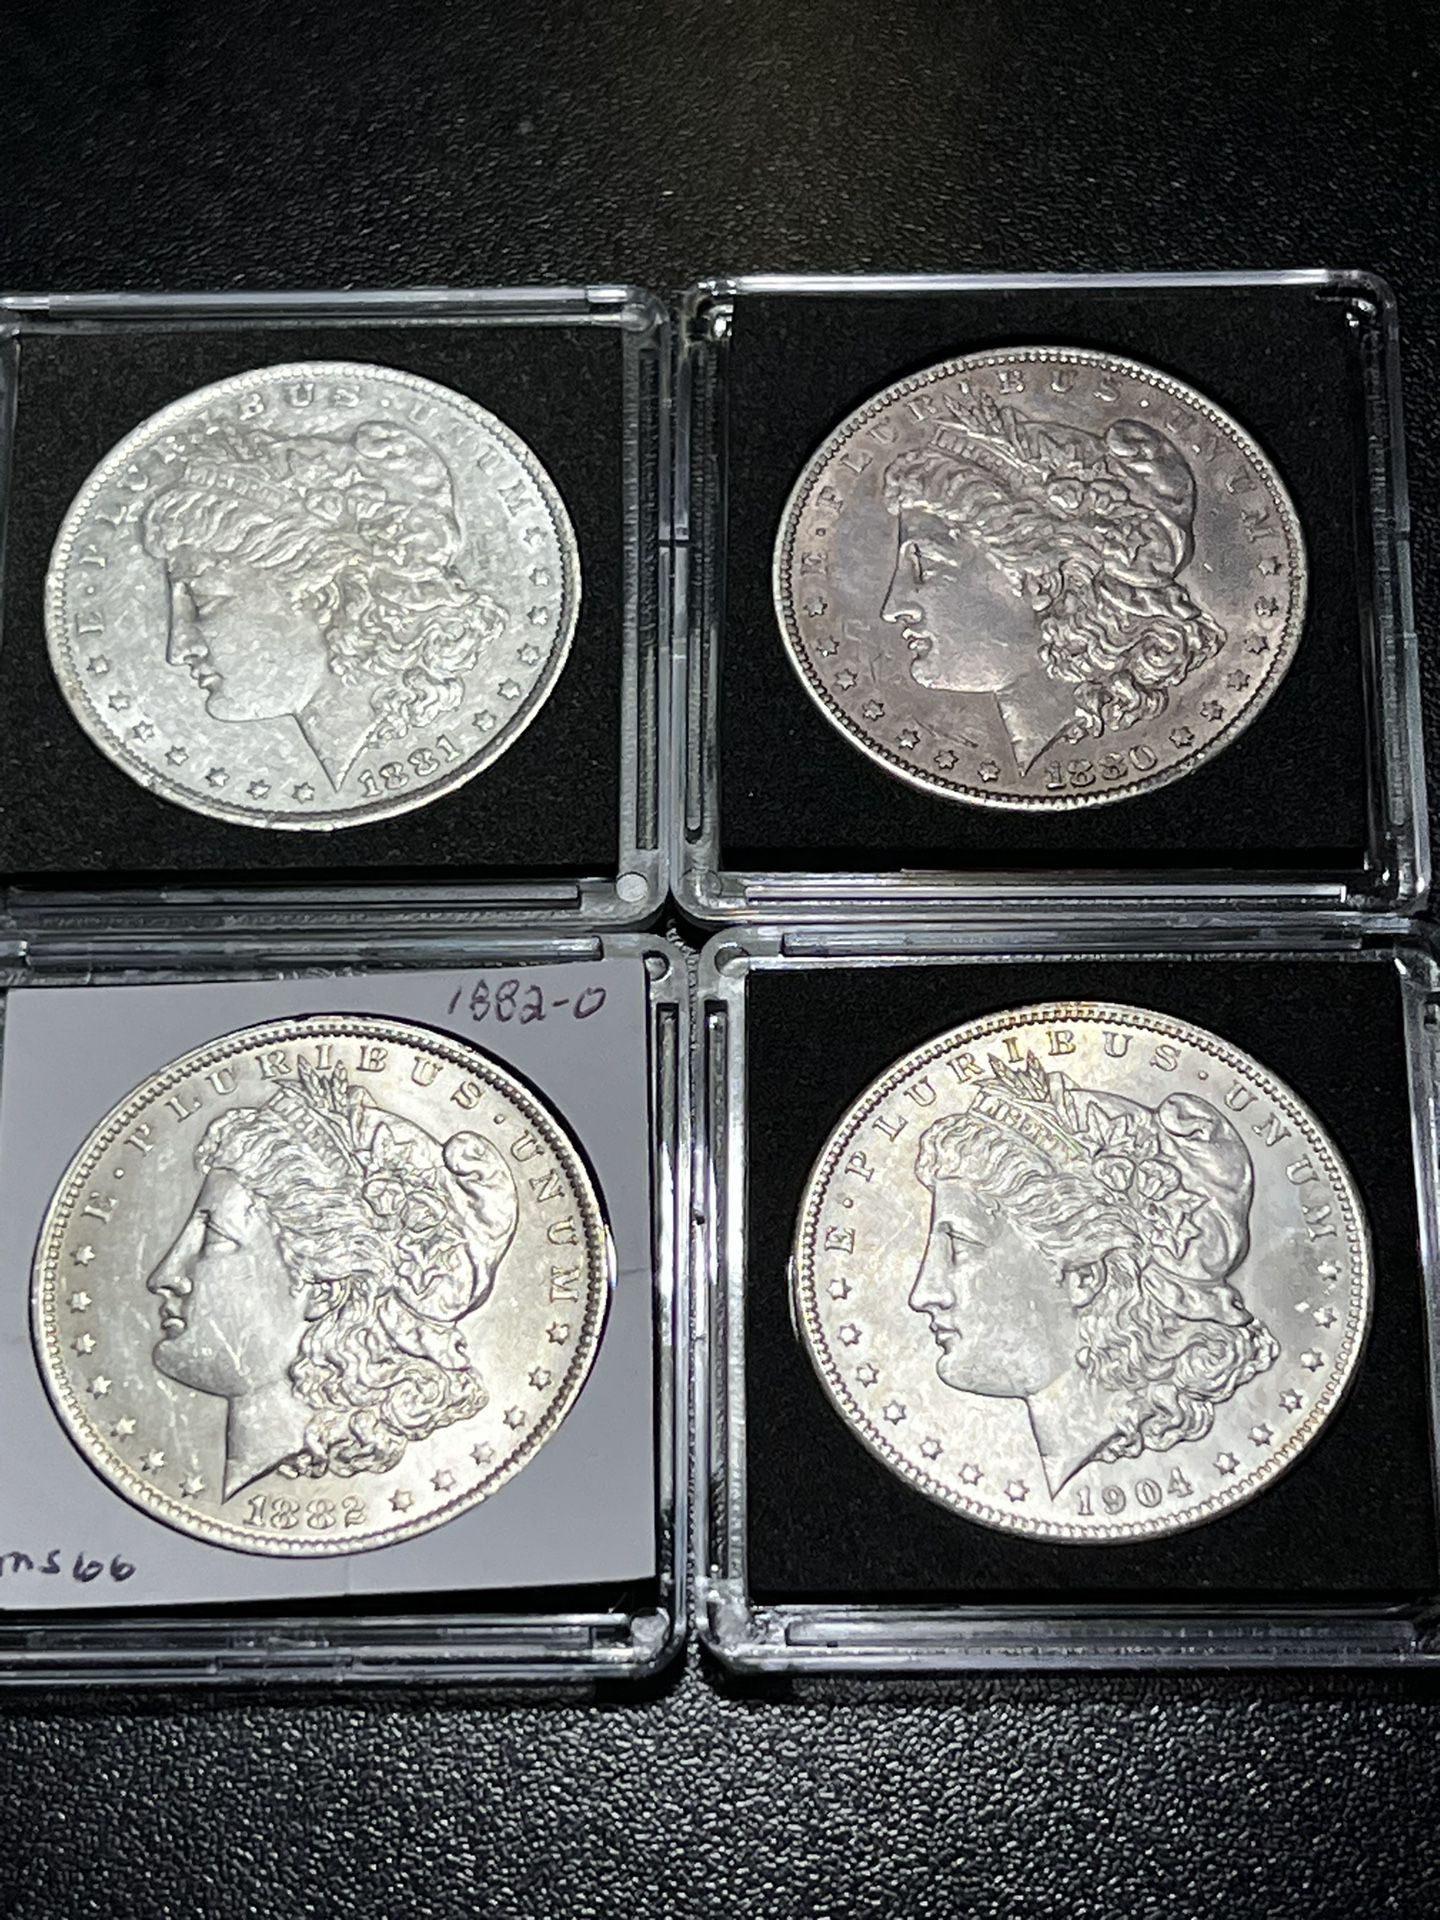 4 High Grade Morgan Silver Dollars